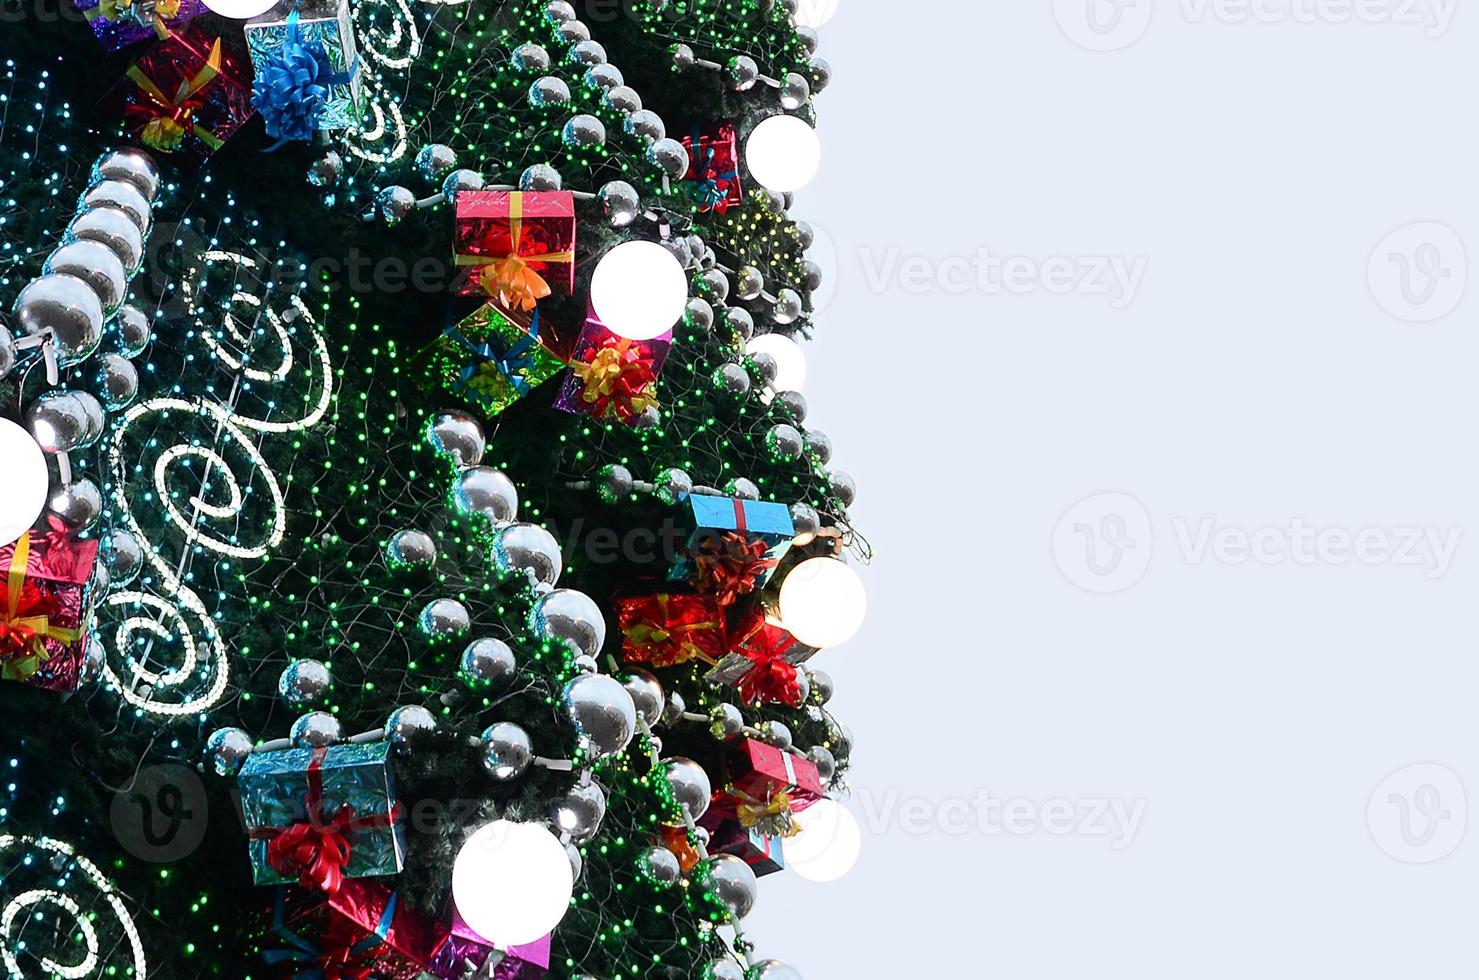 ein Fragment eines riesigen Weihnachtsbaums mit vielen Ornamenten, Geschenkboxen und leuchtenden Lampen. Foto einer geschmückten Weihnachtsbaumnahaufnahme mit Kopienraum